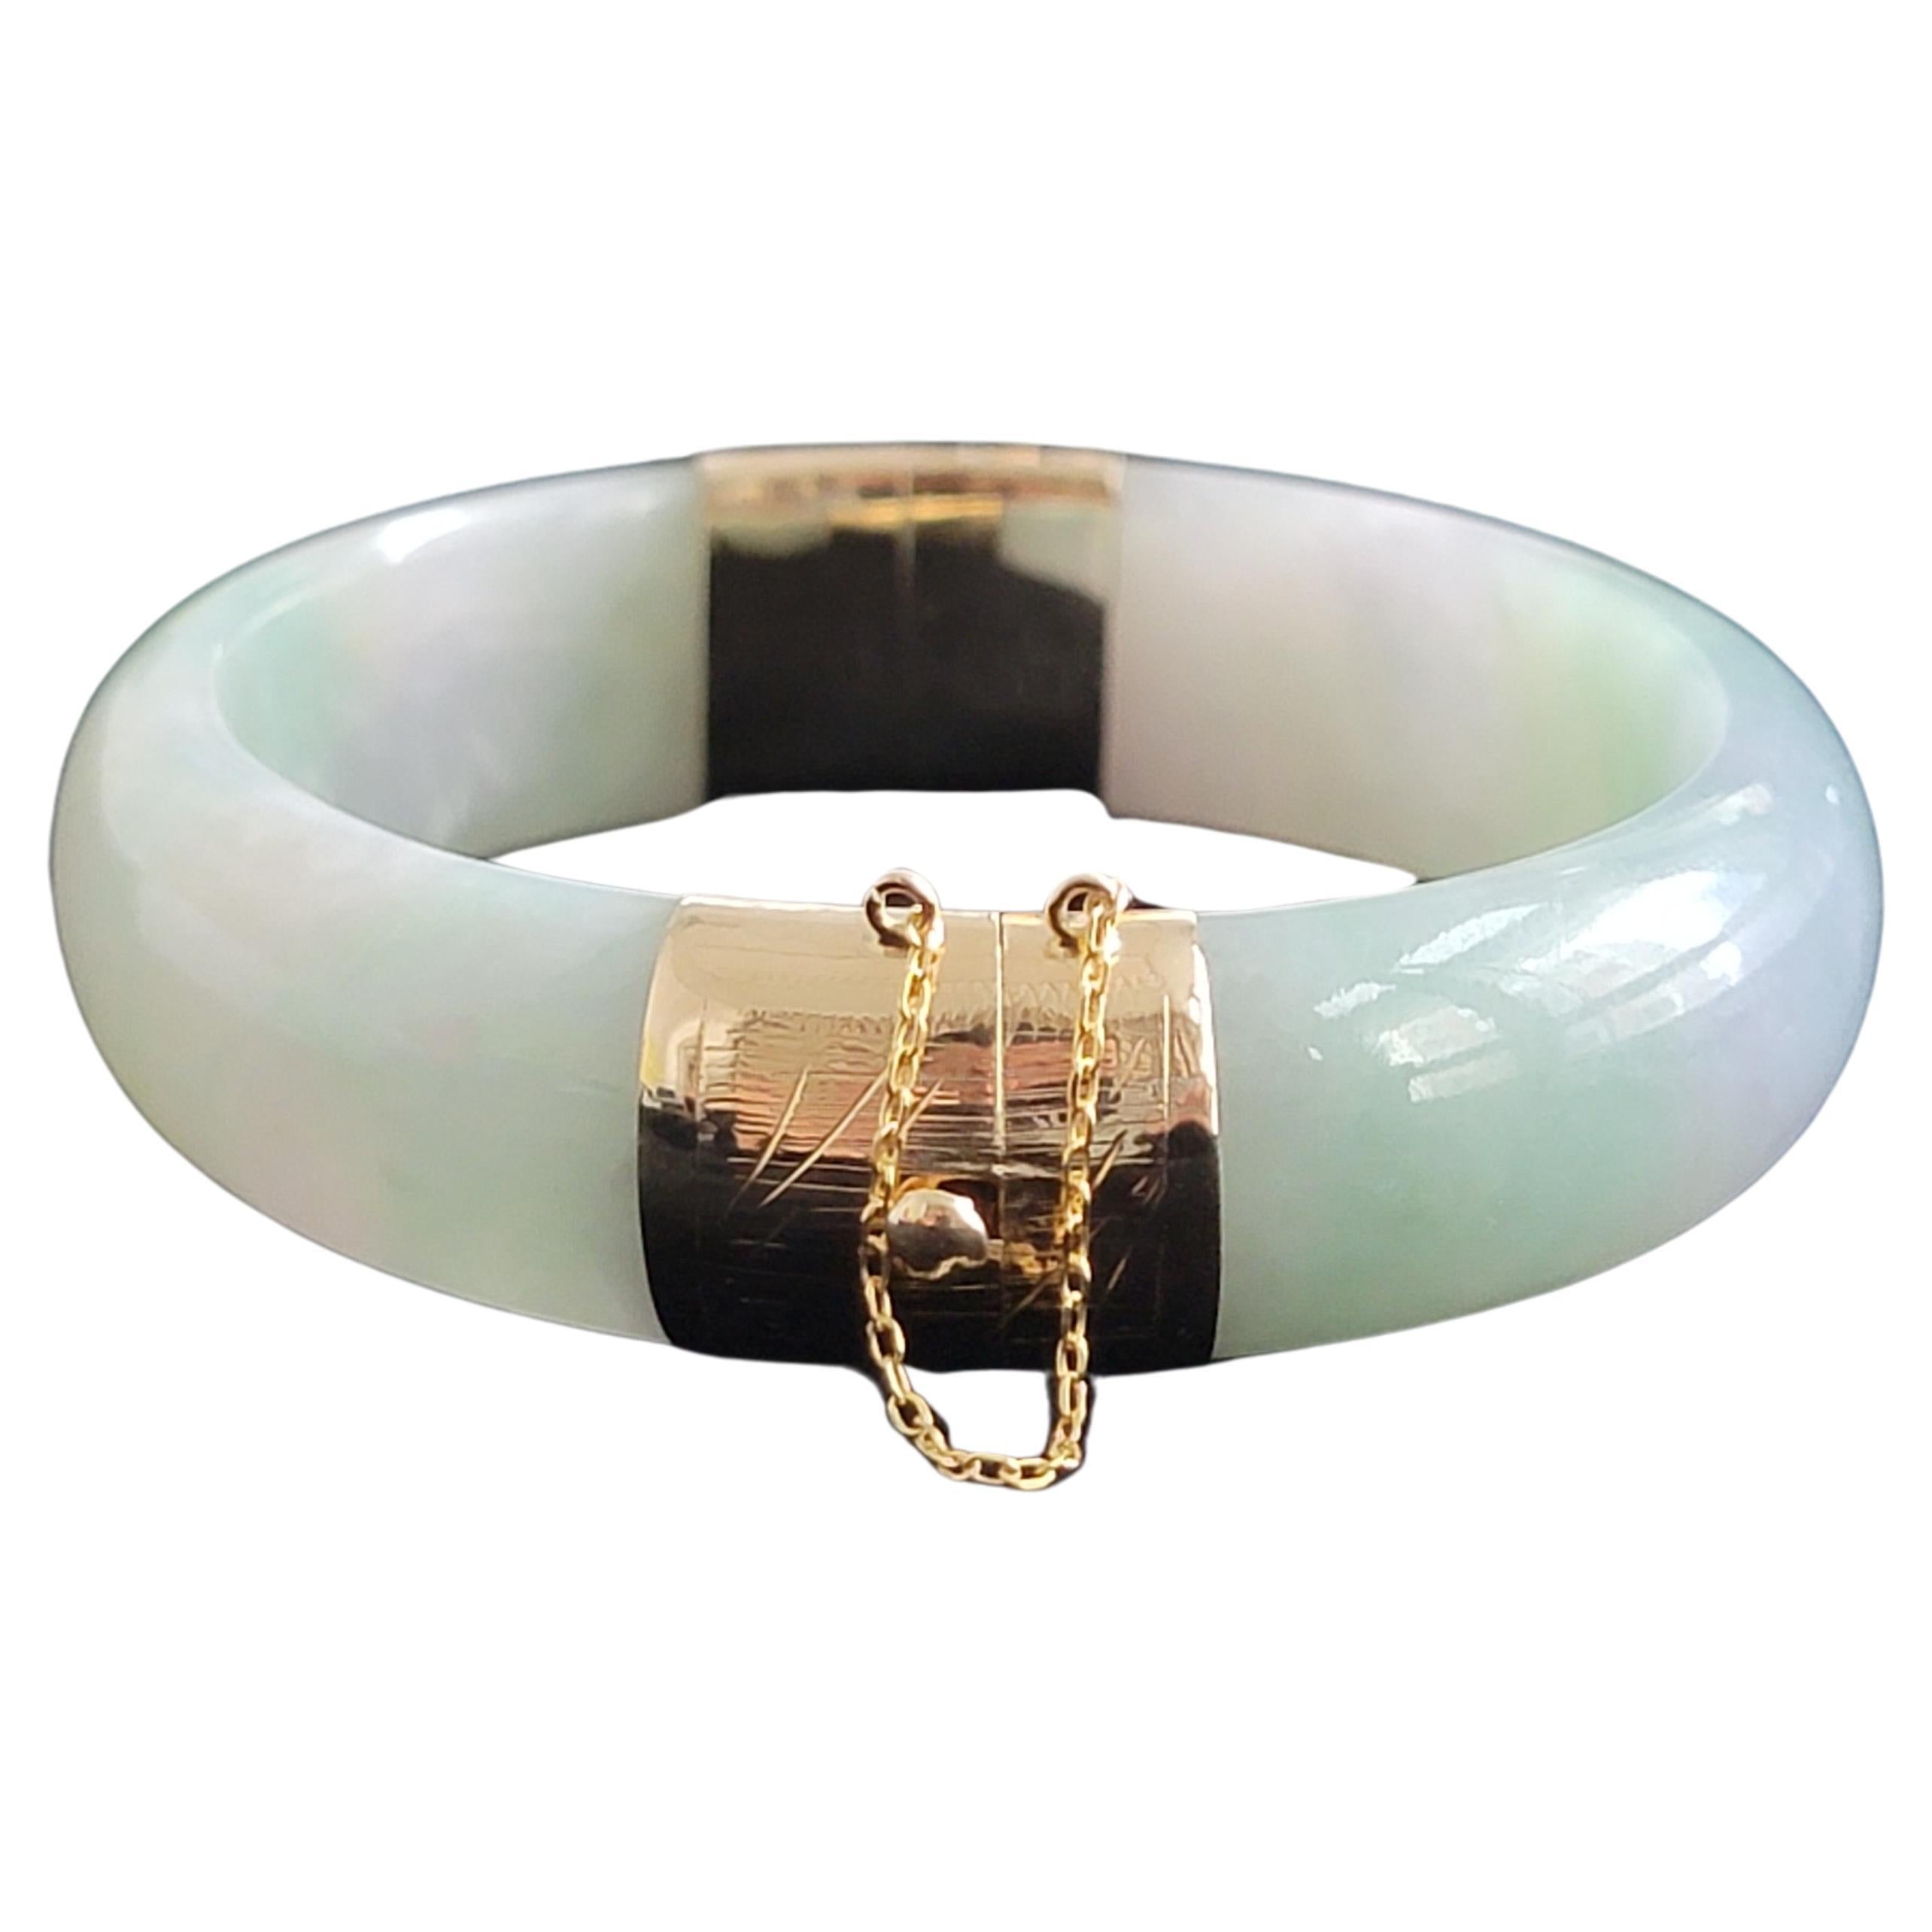 Viceroy's Elliptical Burmese A-Jade Bangle Bracelet (with 14K Gold) For Sale